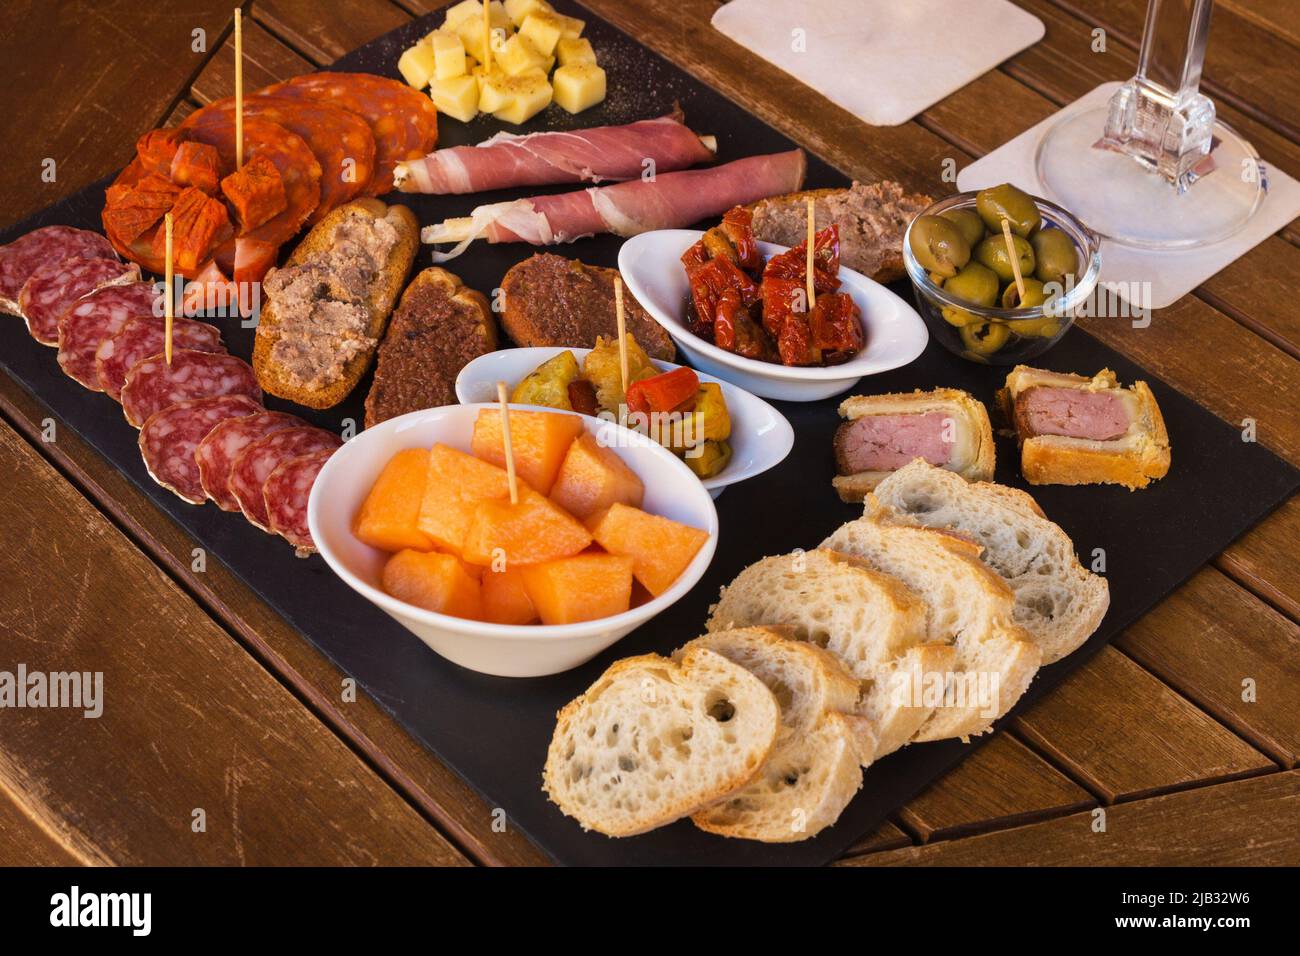 Wurst und Käse auf braunem Hintergrund in Scheiben geschnitten. Italienische Antipasti-Wein-Snacks. Käse, mediterrane Oliven, Prosciutto mit Melone, Brotstangen Stockfoto